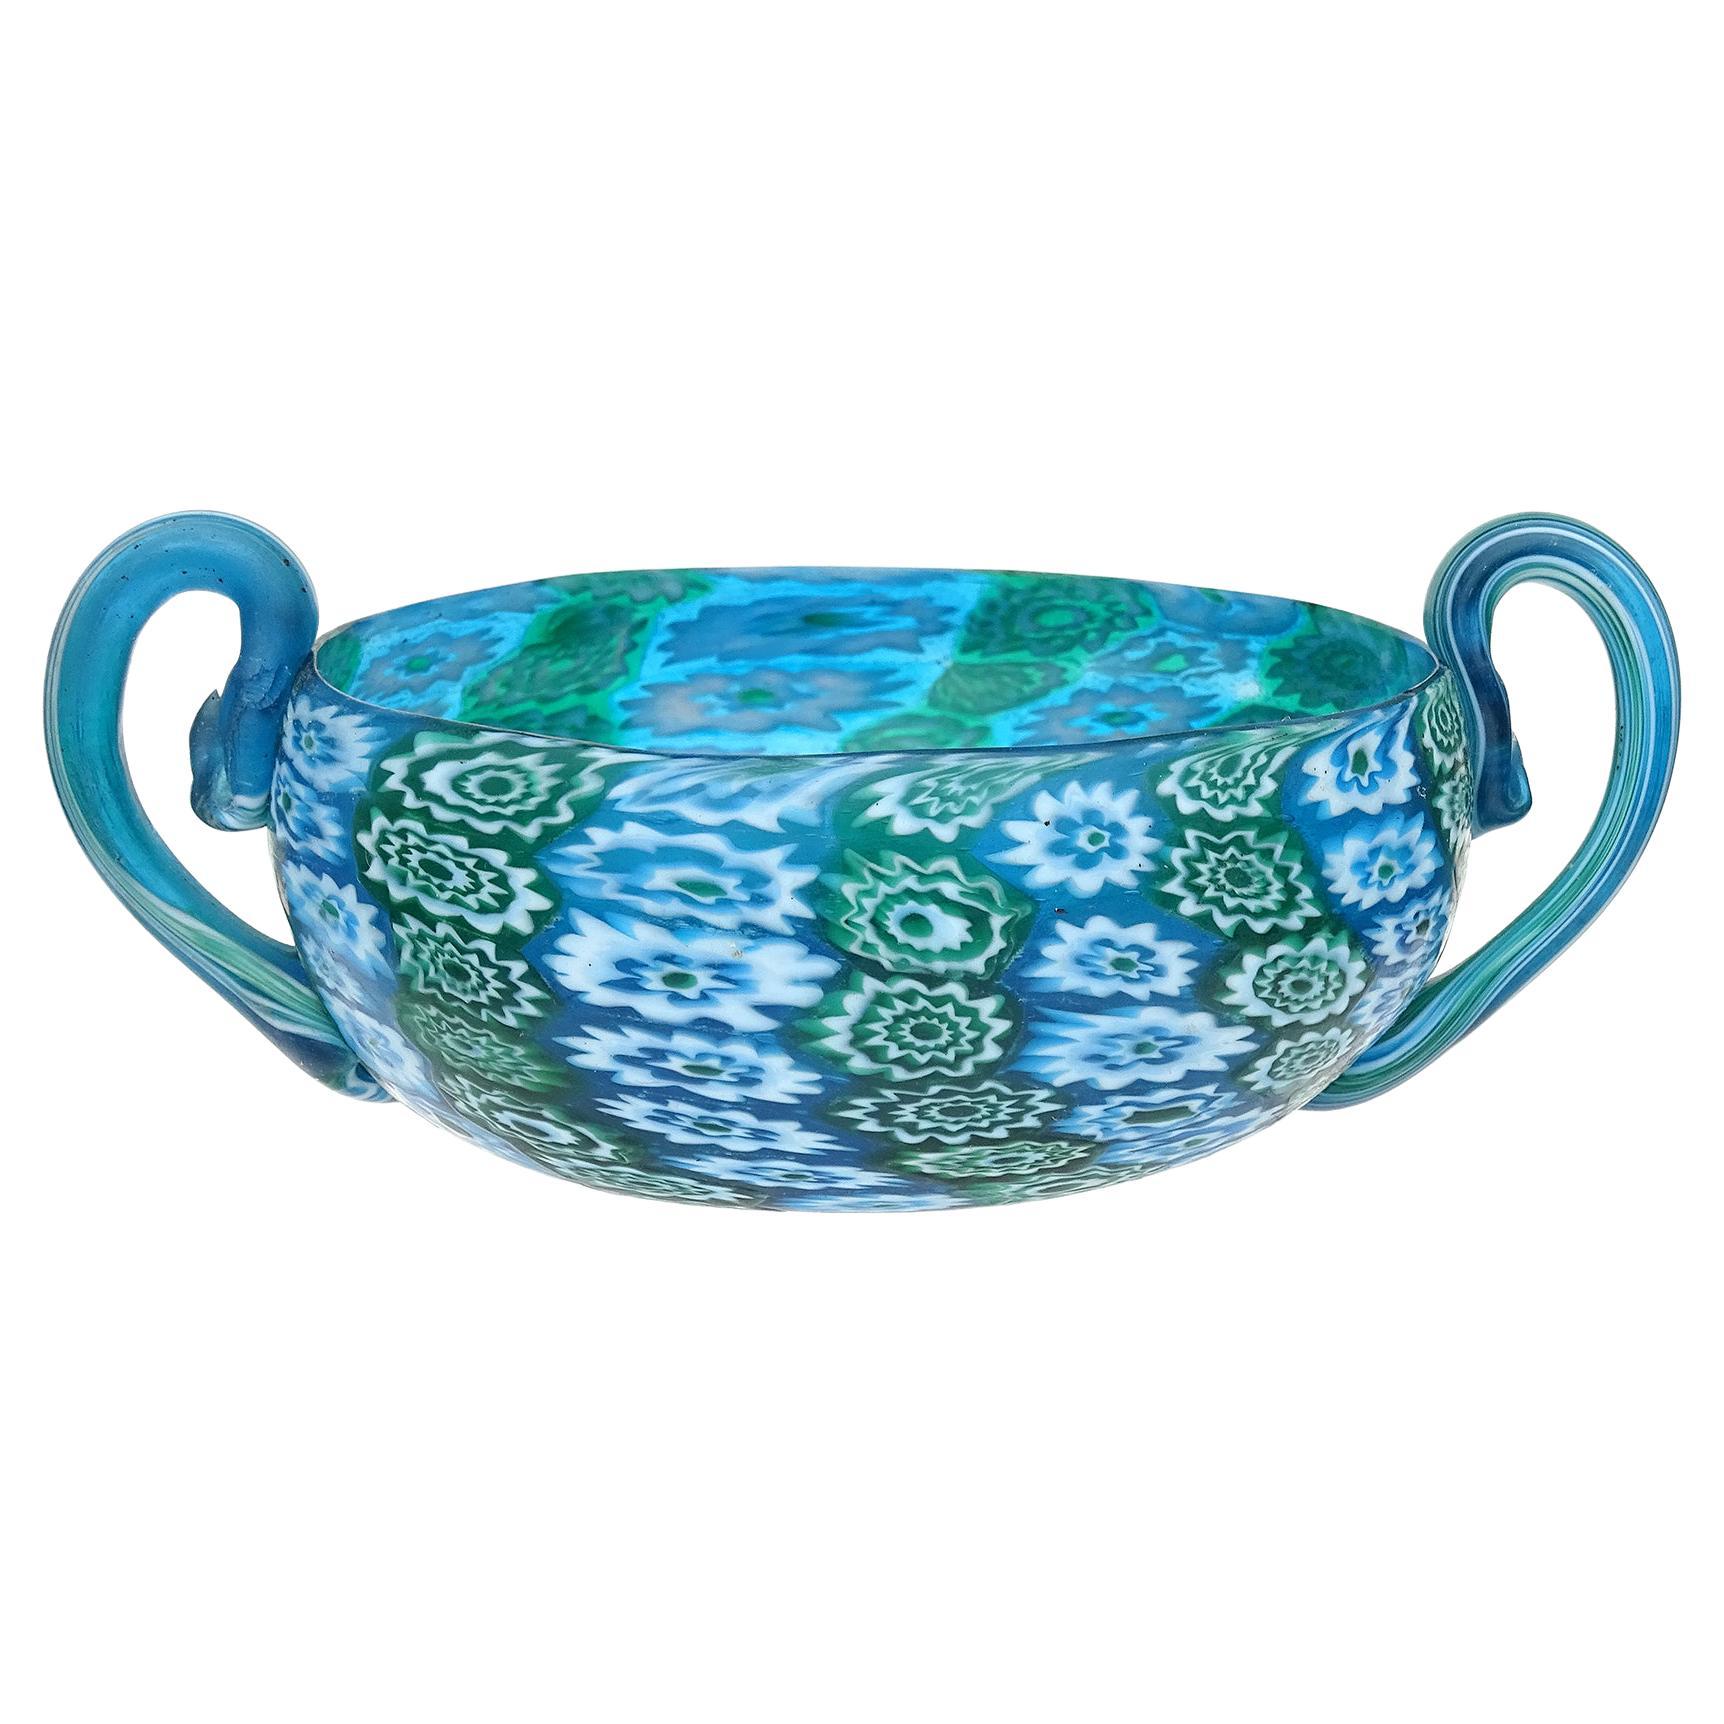 Fratelli Toso Murano Millefiori Flower Antique Italian Art Glass Vide Poche Bowl